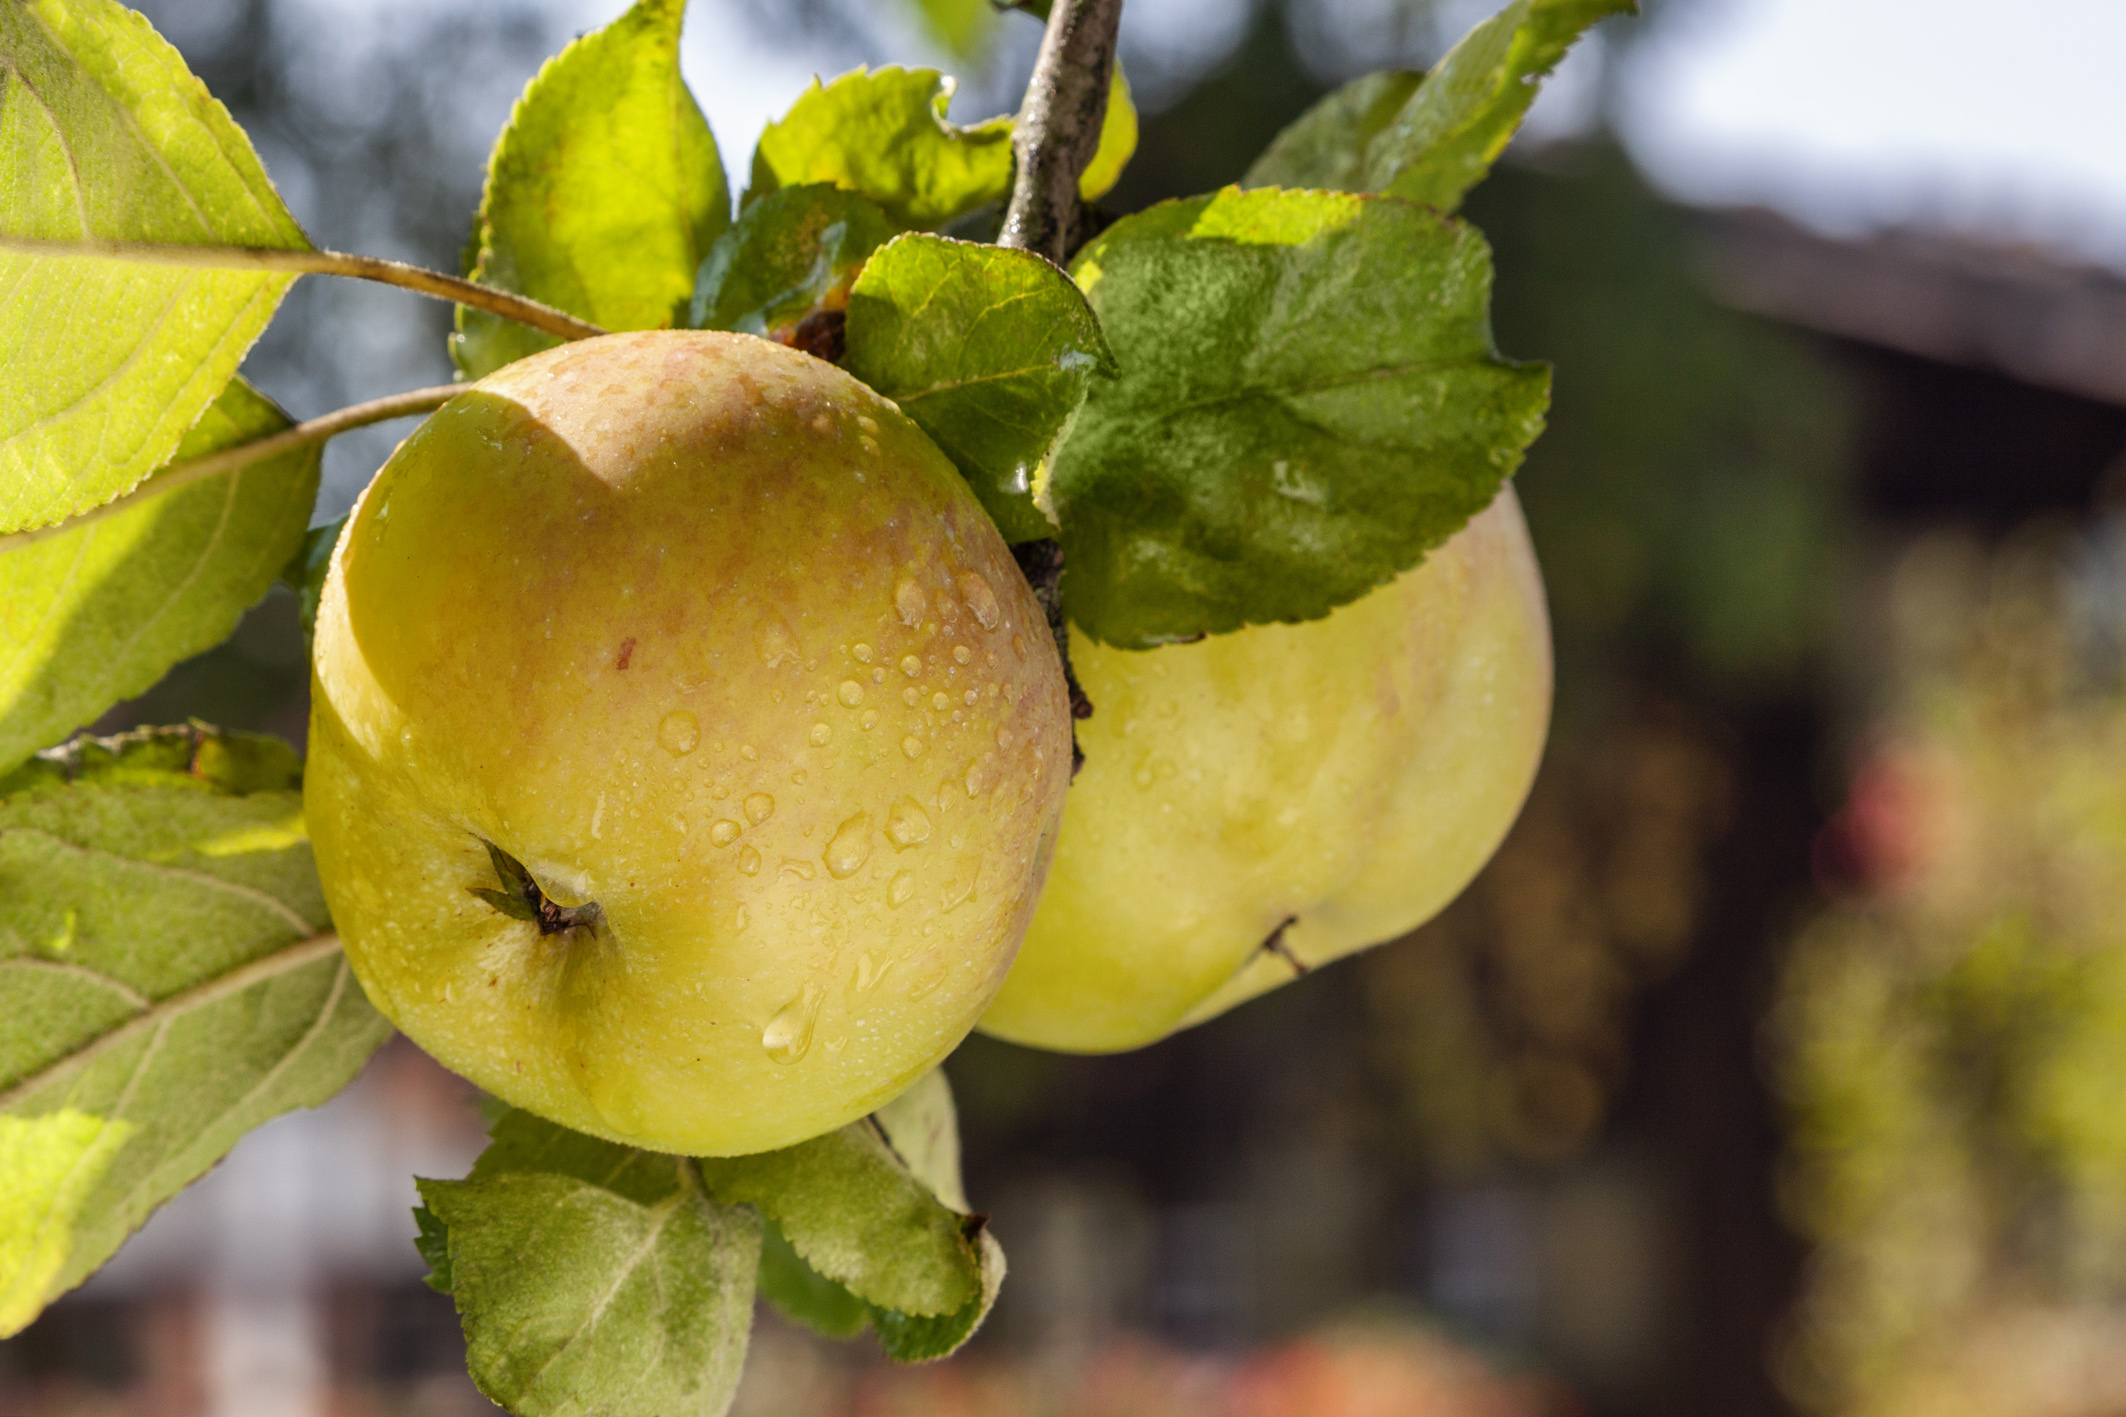 Der Brettacher Apfel, ein säuerlich schmeckender Tafel- und Wirtschaftsapfel, wurde 1908 in Brettach bei Heilbronn gefunden. Er gilt als sehr resistent gegen Krankheiten und Schädlinge.